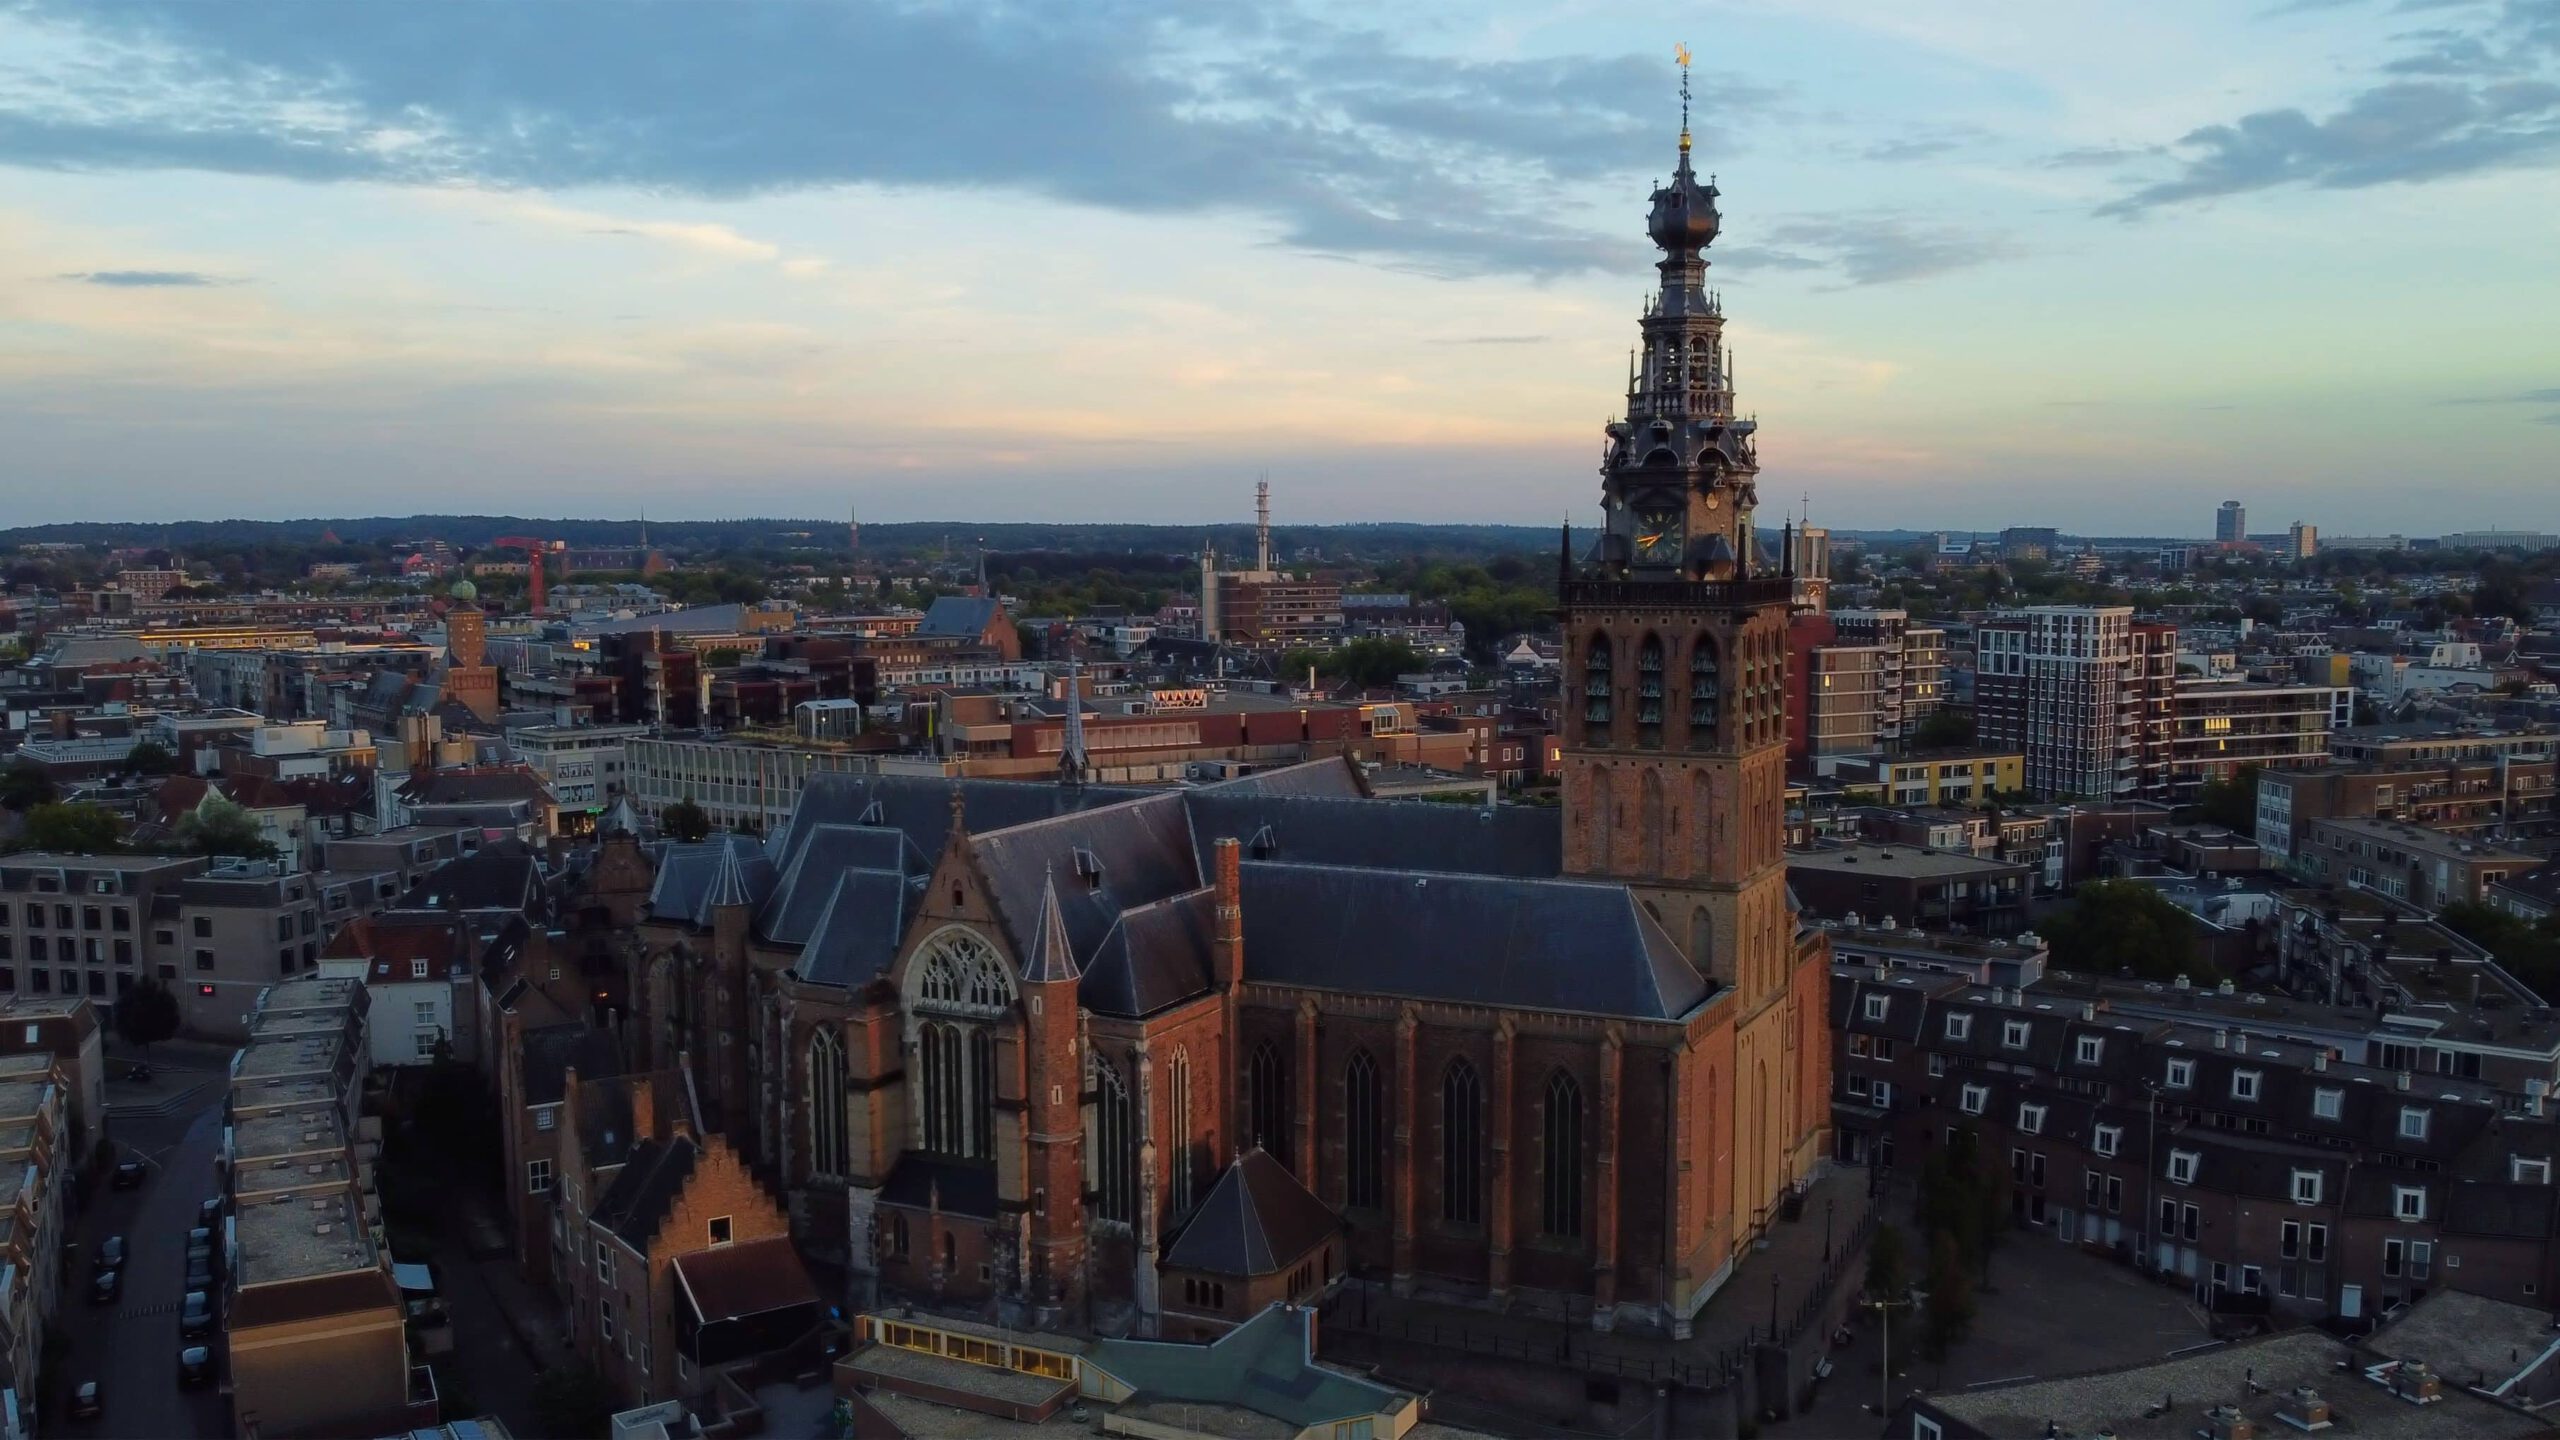 Overzicht van de stad Nijmegen met de kerk in de voorgrond